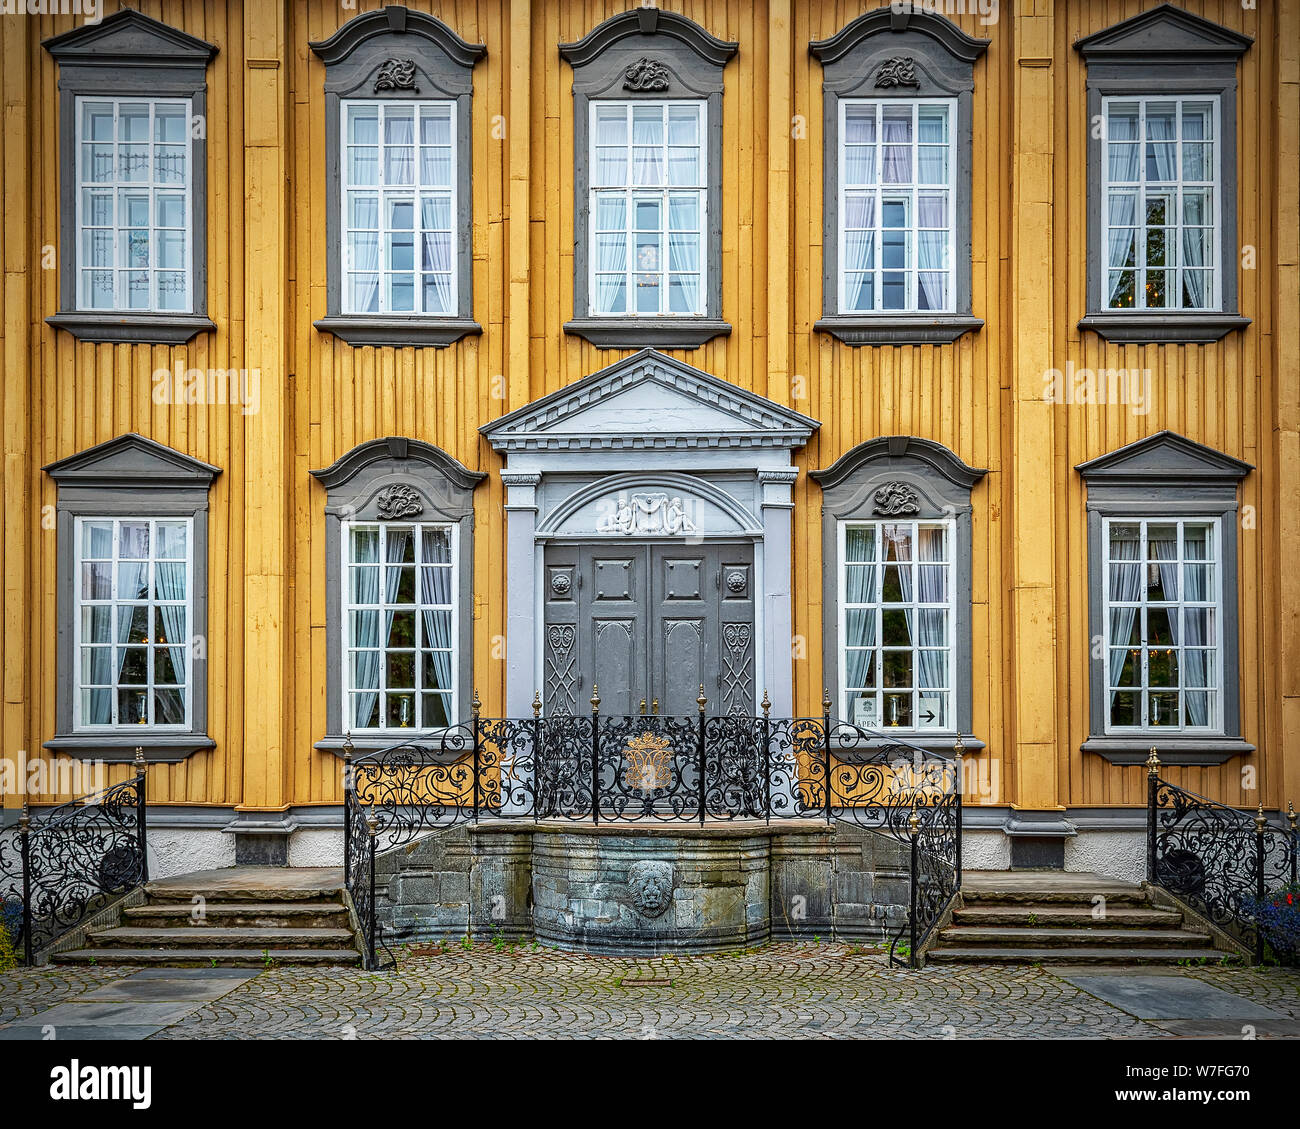 Stiftsgarden è la residenza reale di Trondheim, Norvegia. È situato in una posizione centrale della città più importante arteria. Foto Stock